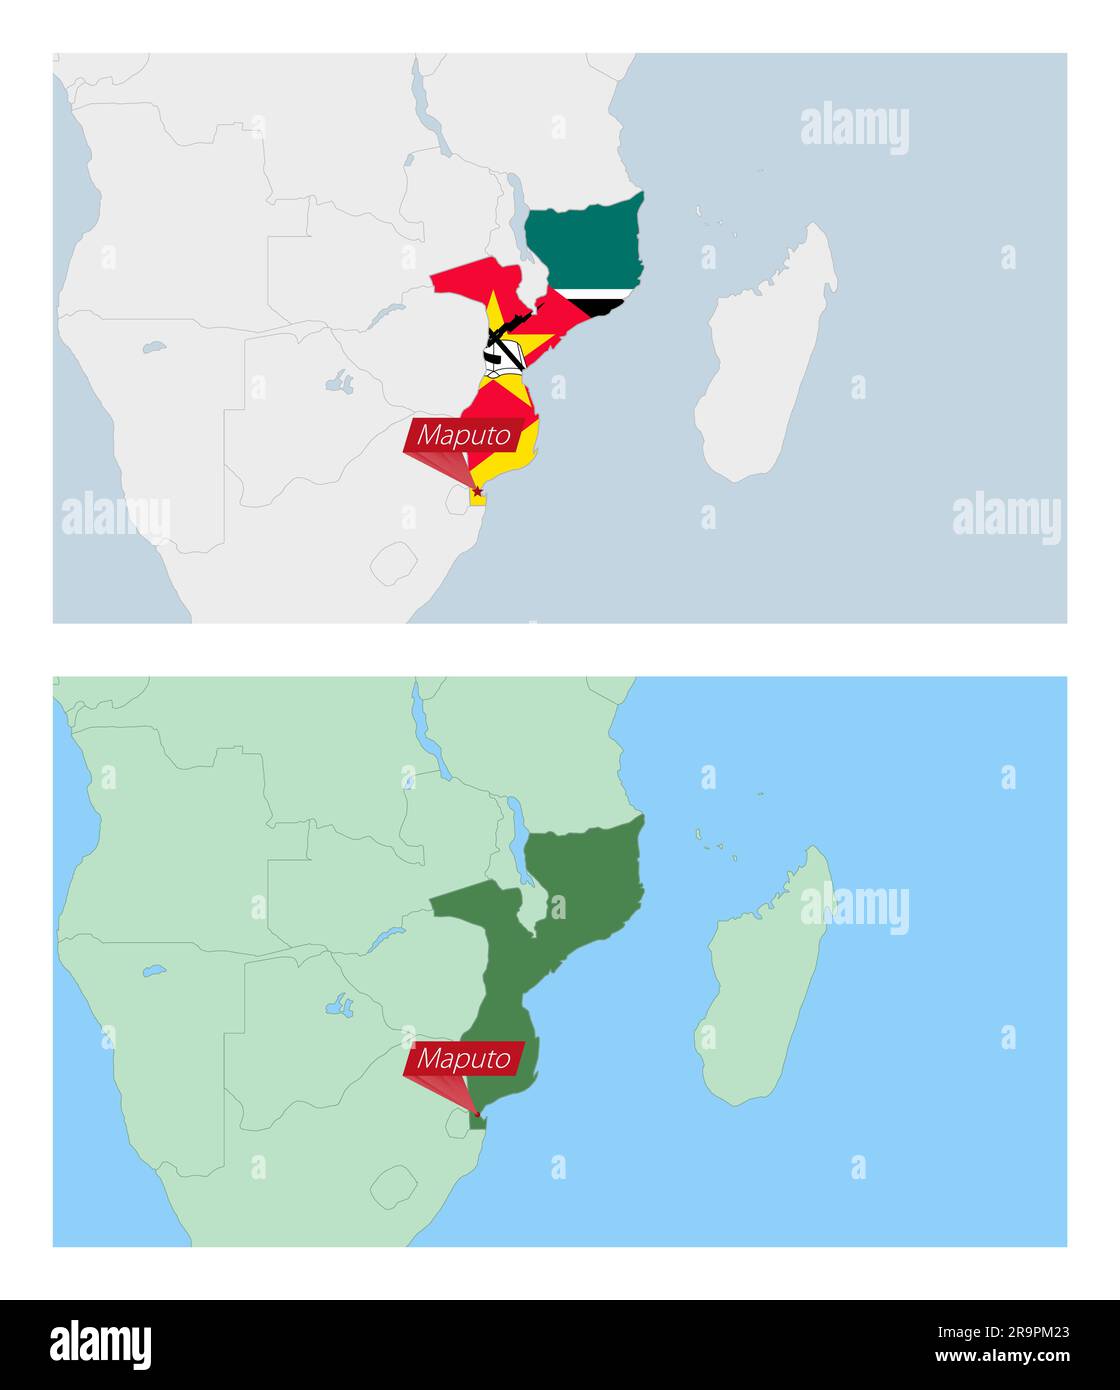 Mapa de Mozambique con pin de capital del país. Dos tipos de mapa de Mozambique con los países vecinos. Plantilla de vector. Ilustración del Vector